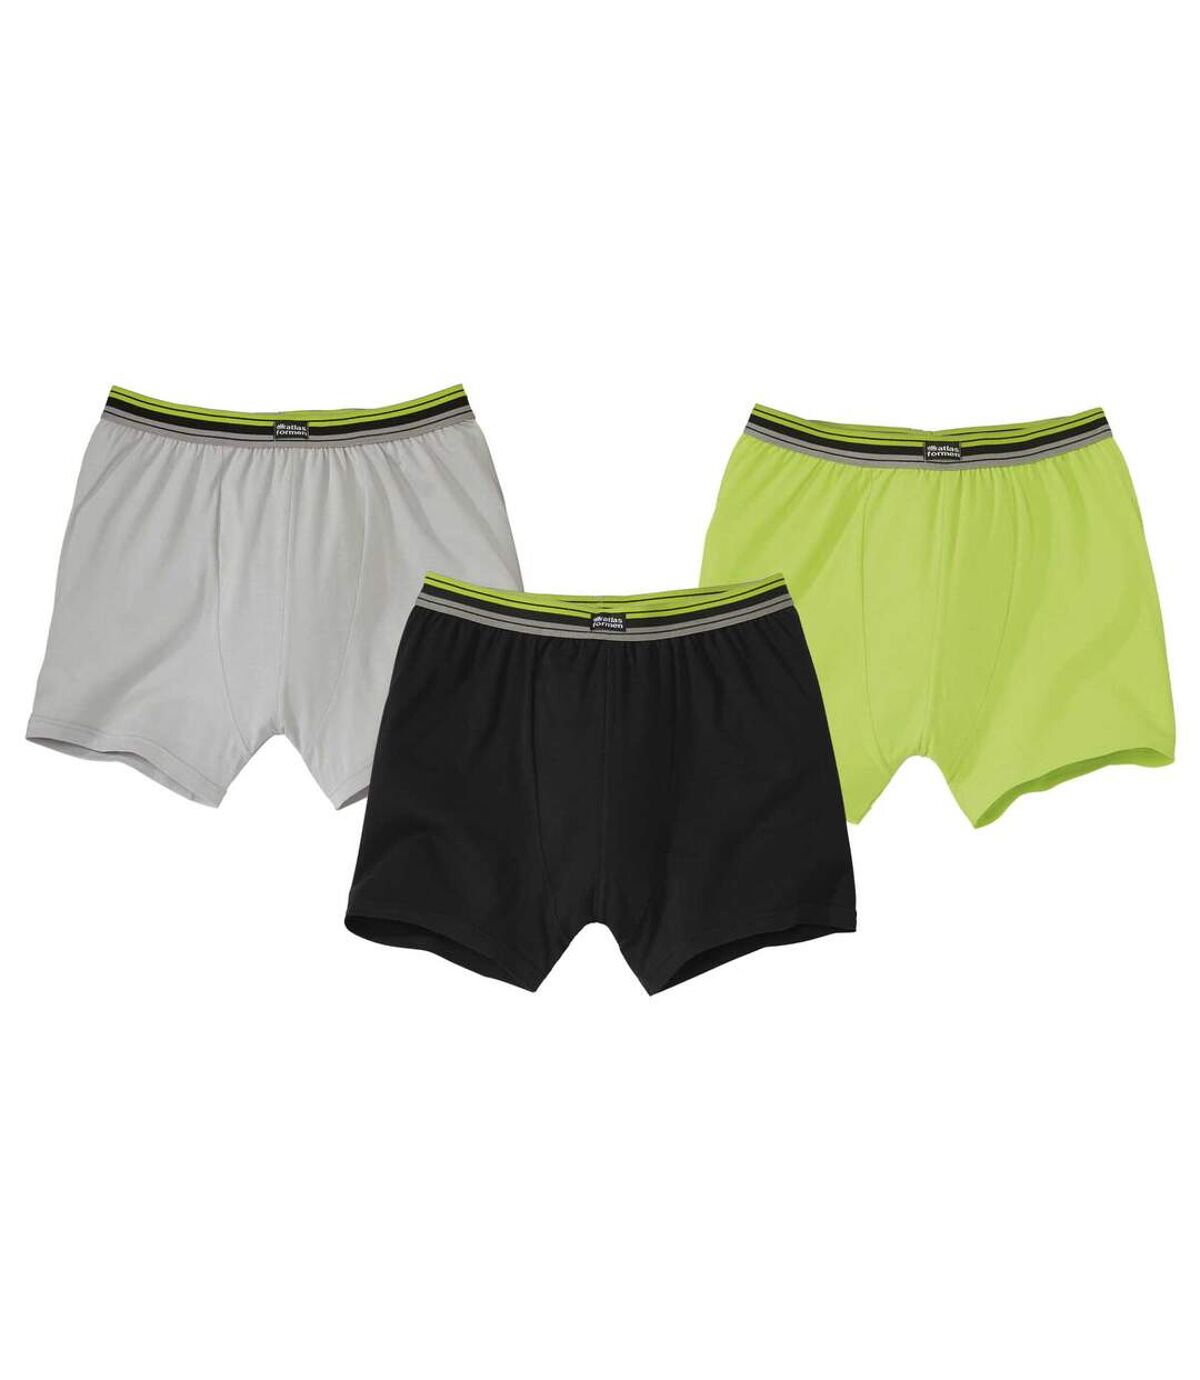 Pack of 3 Men's Plain Boxer Shorts - Black Green Gray Atlas For Men